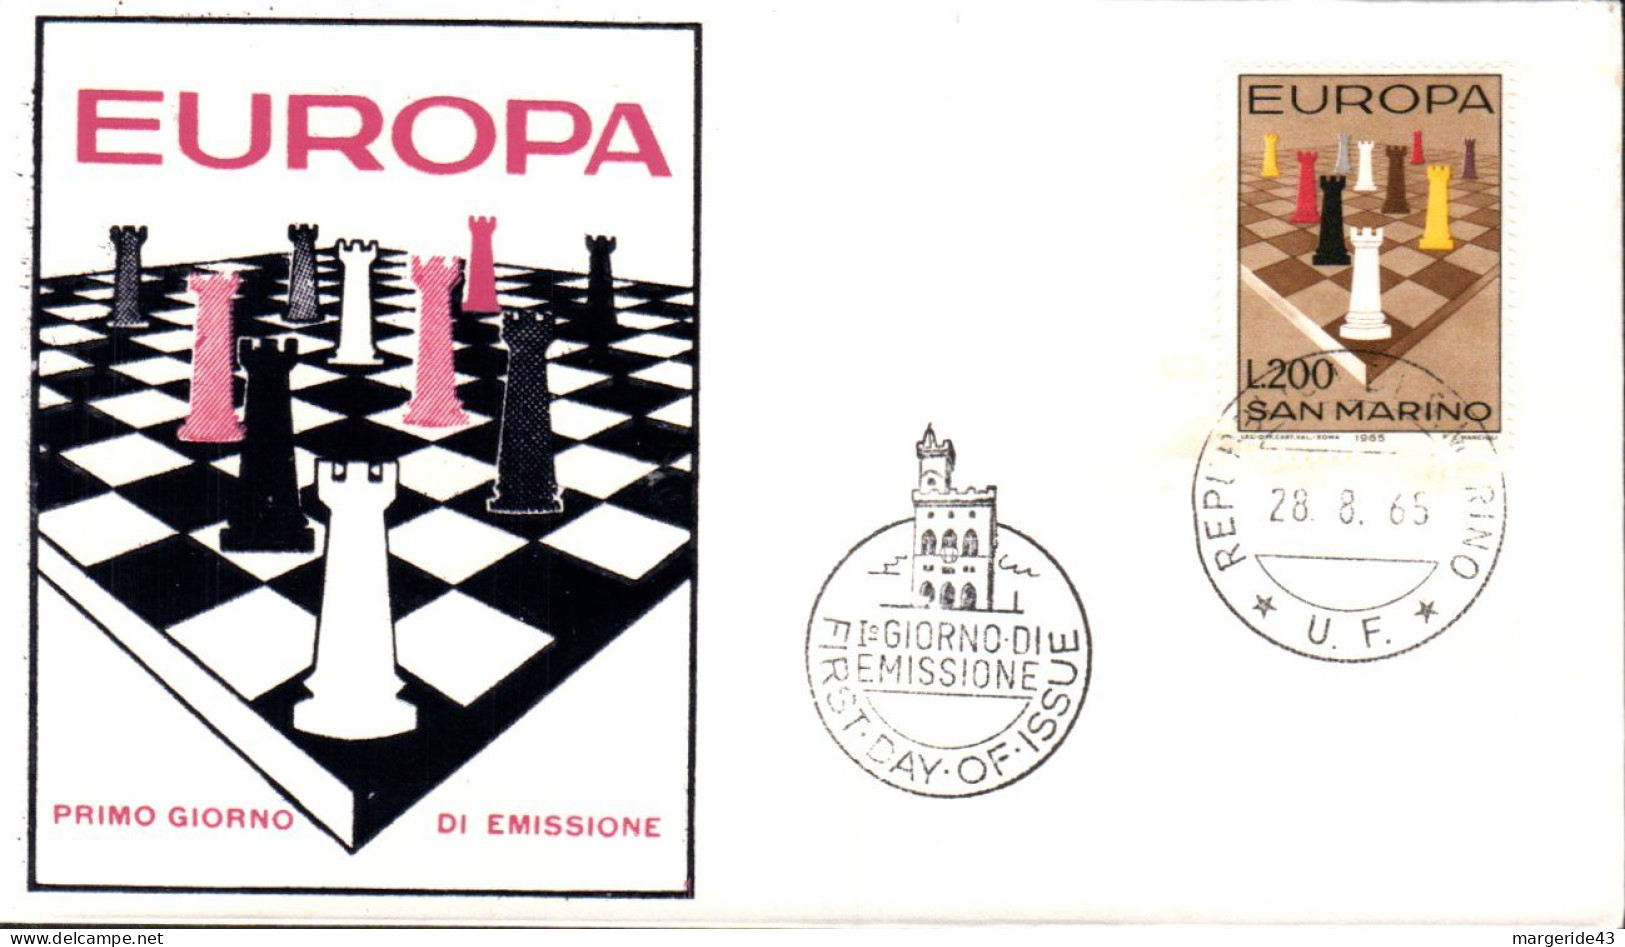 EUROPA 1965 SAN MARIN FDC - 1965